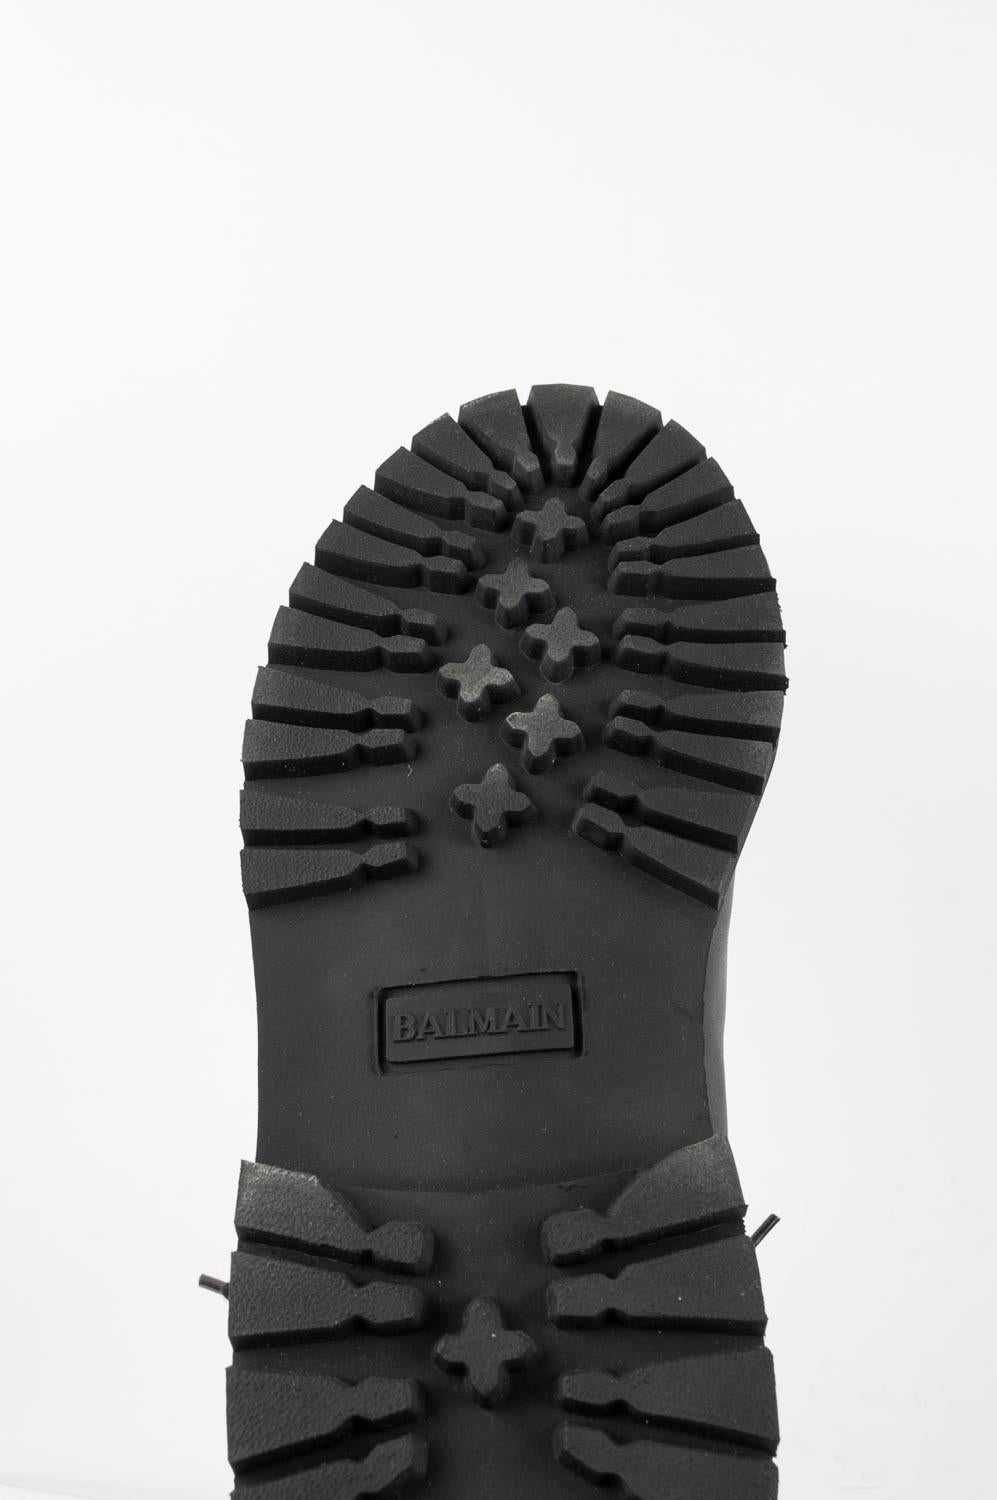 Balmain Boots Leather Men Shoes Size 40EU S316 1